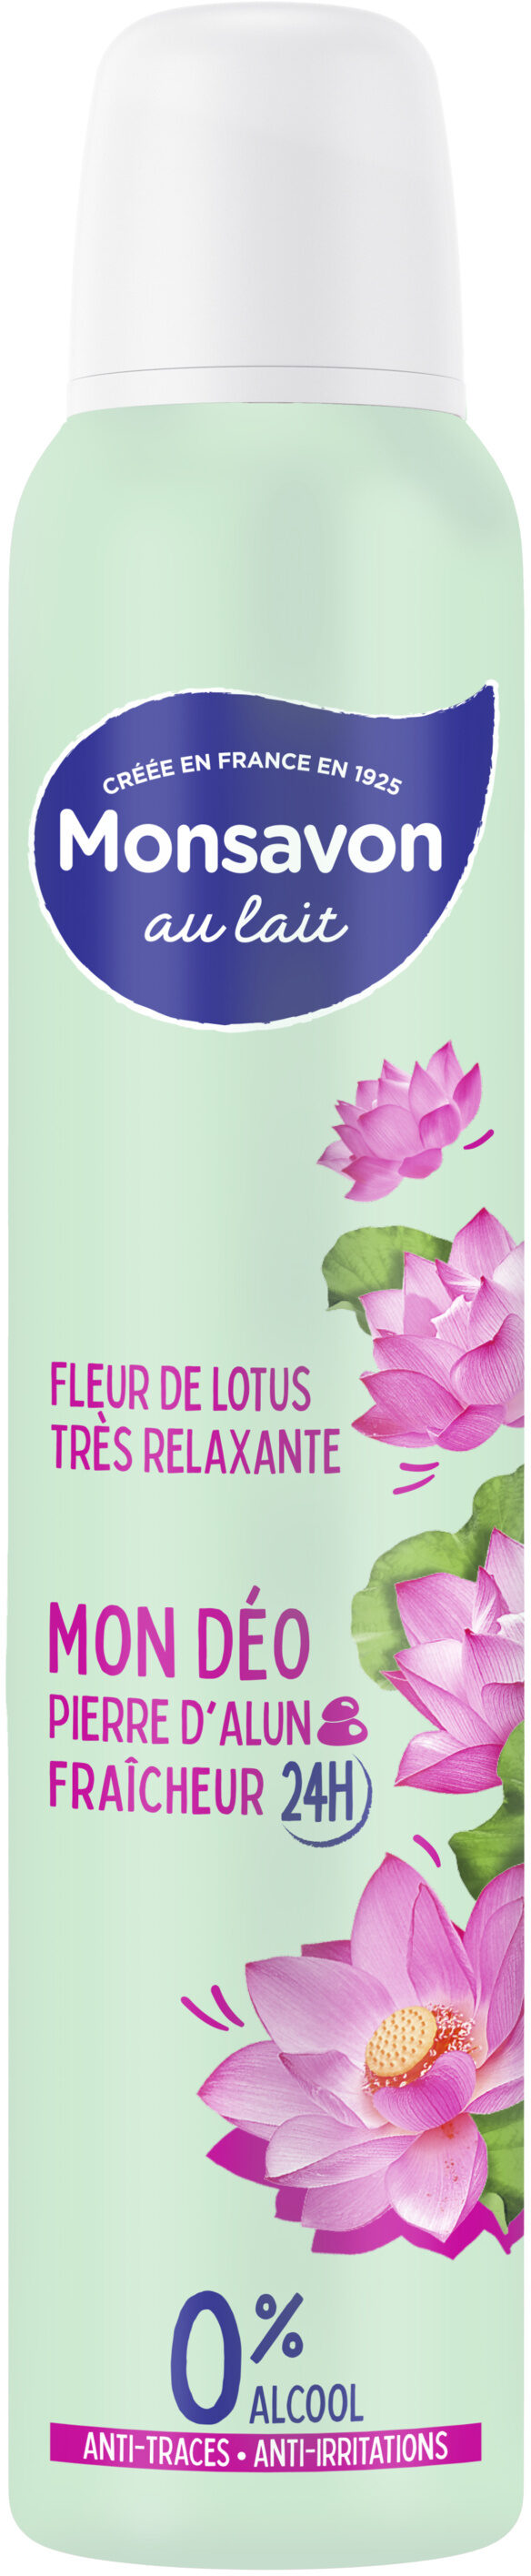 Monsavon Déodorant Femme Spray Fleur de Lotus Presque Divine 200ml - Produit - fr